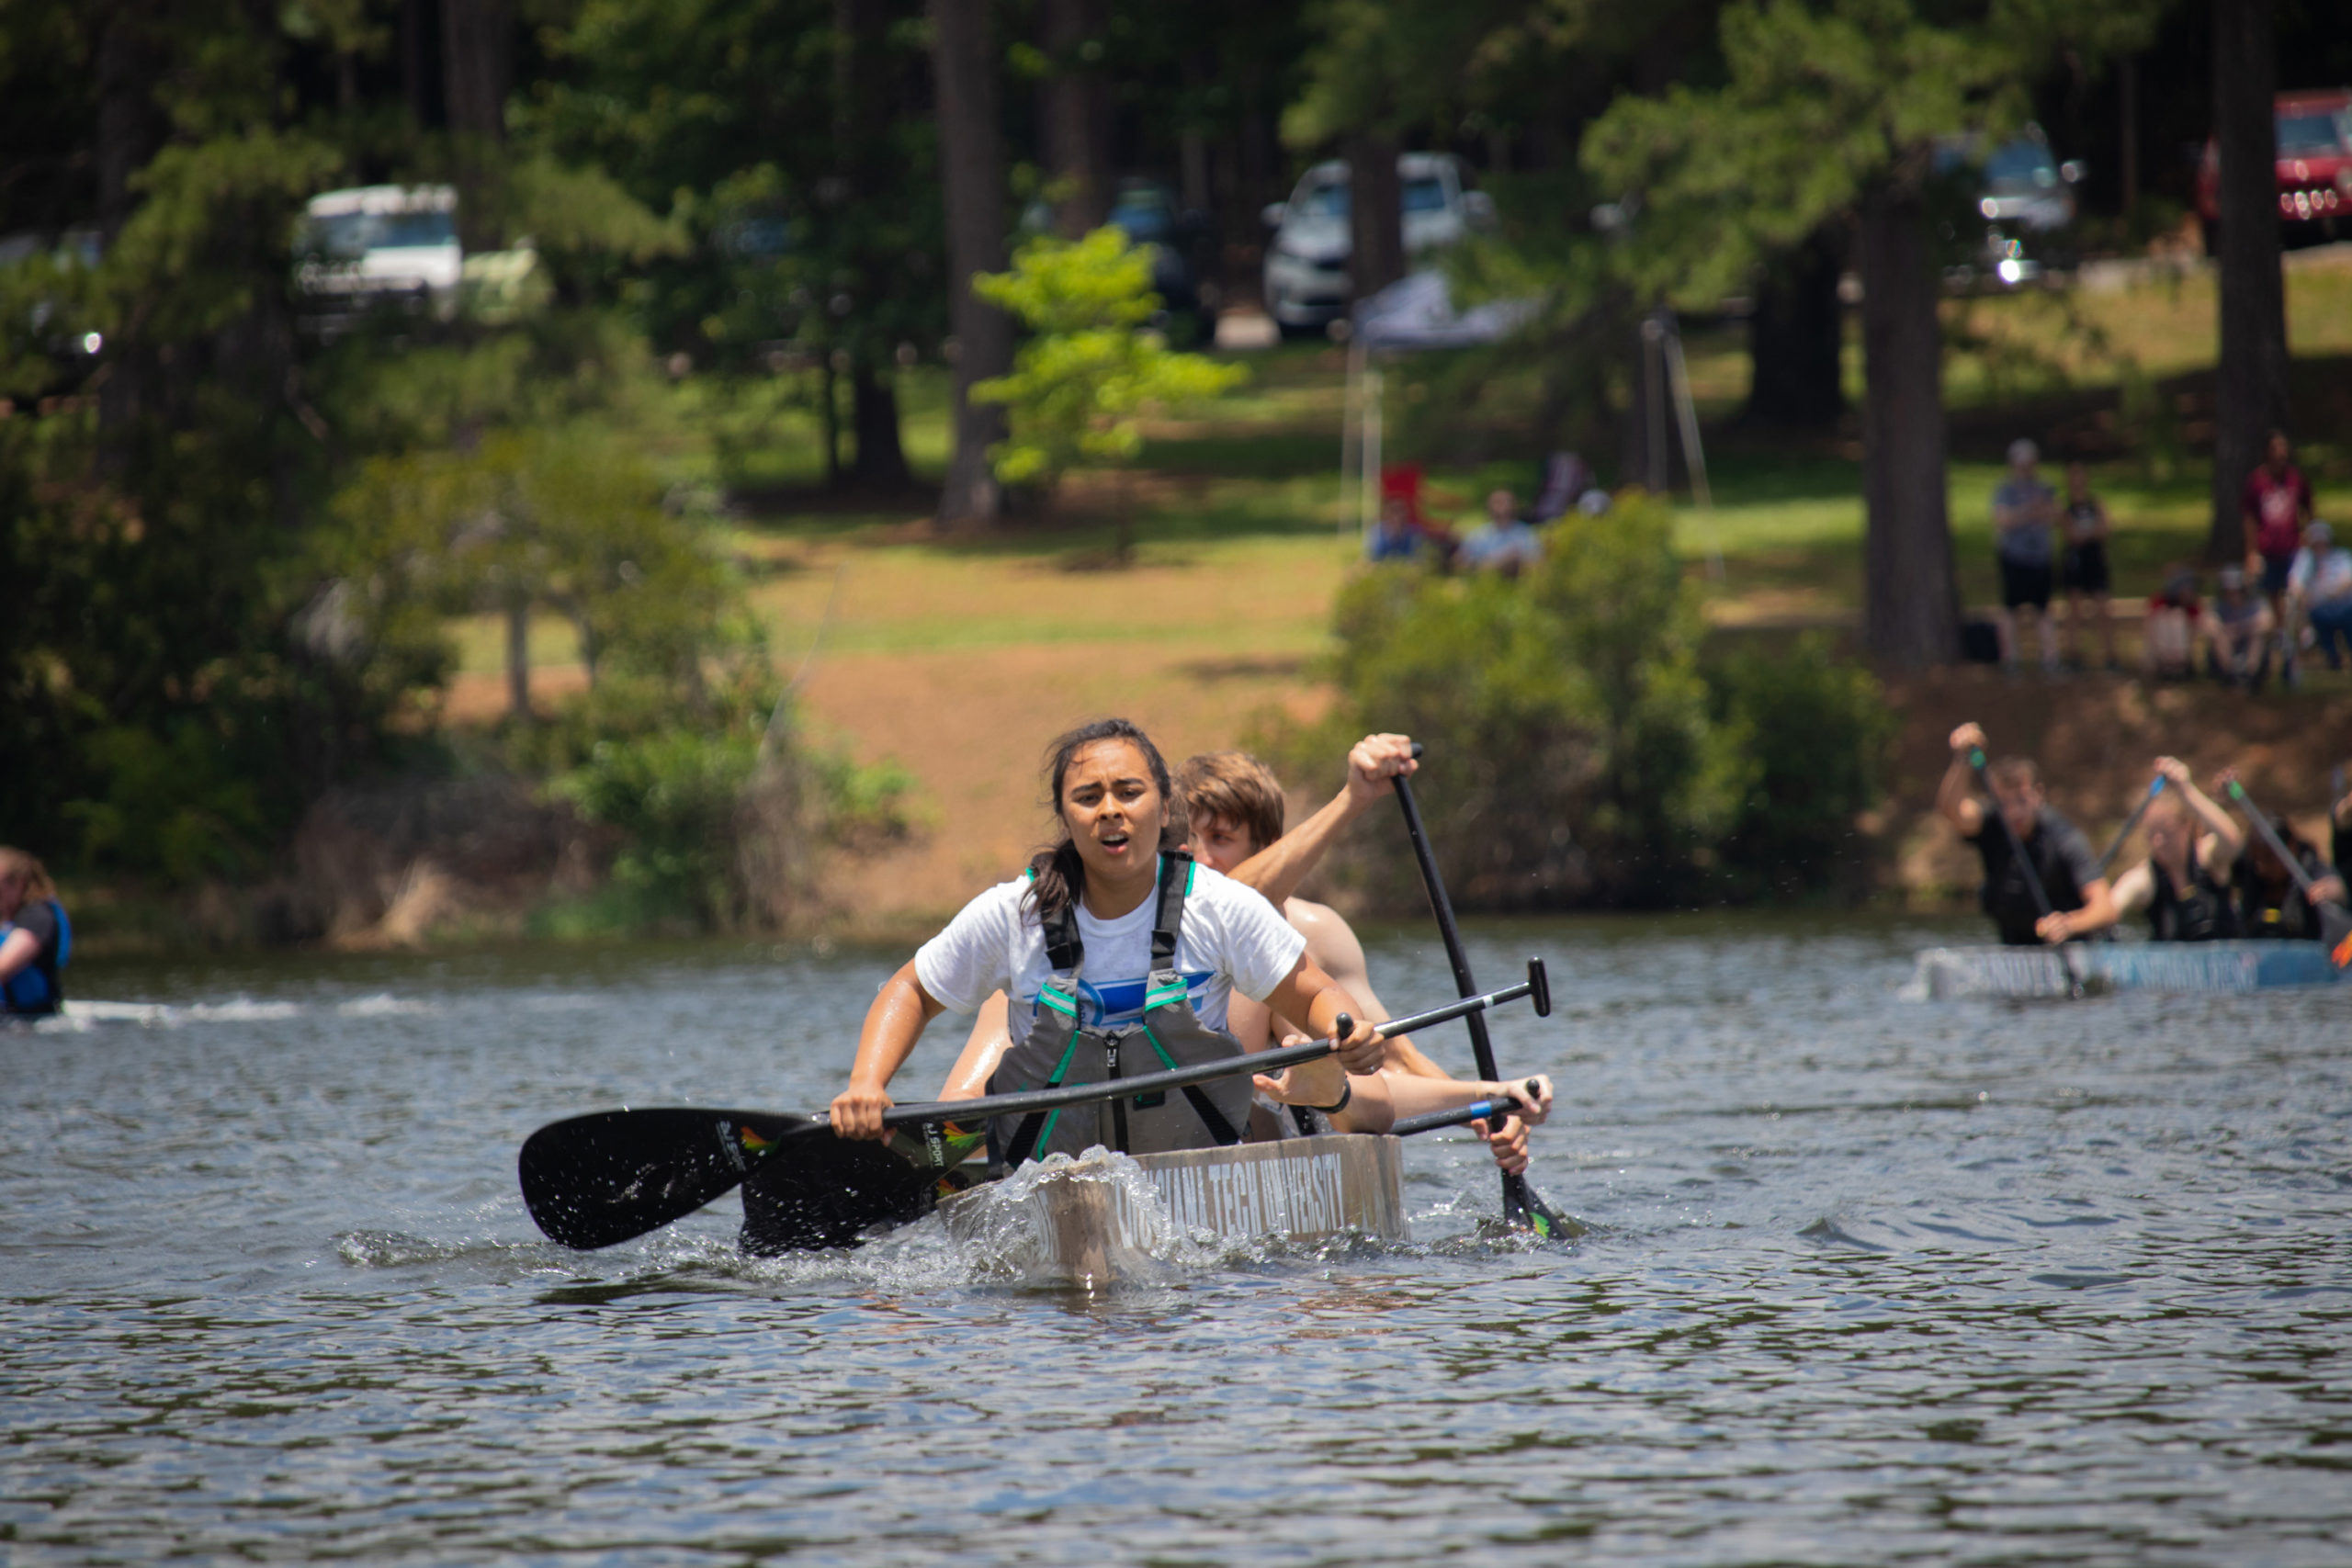 Louisiana Tech Concrete Canoe Women's Team Racing